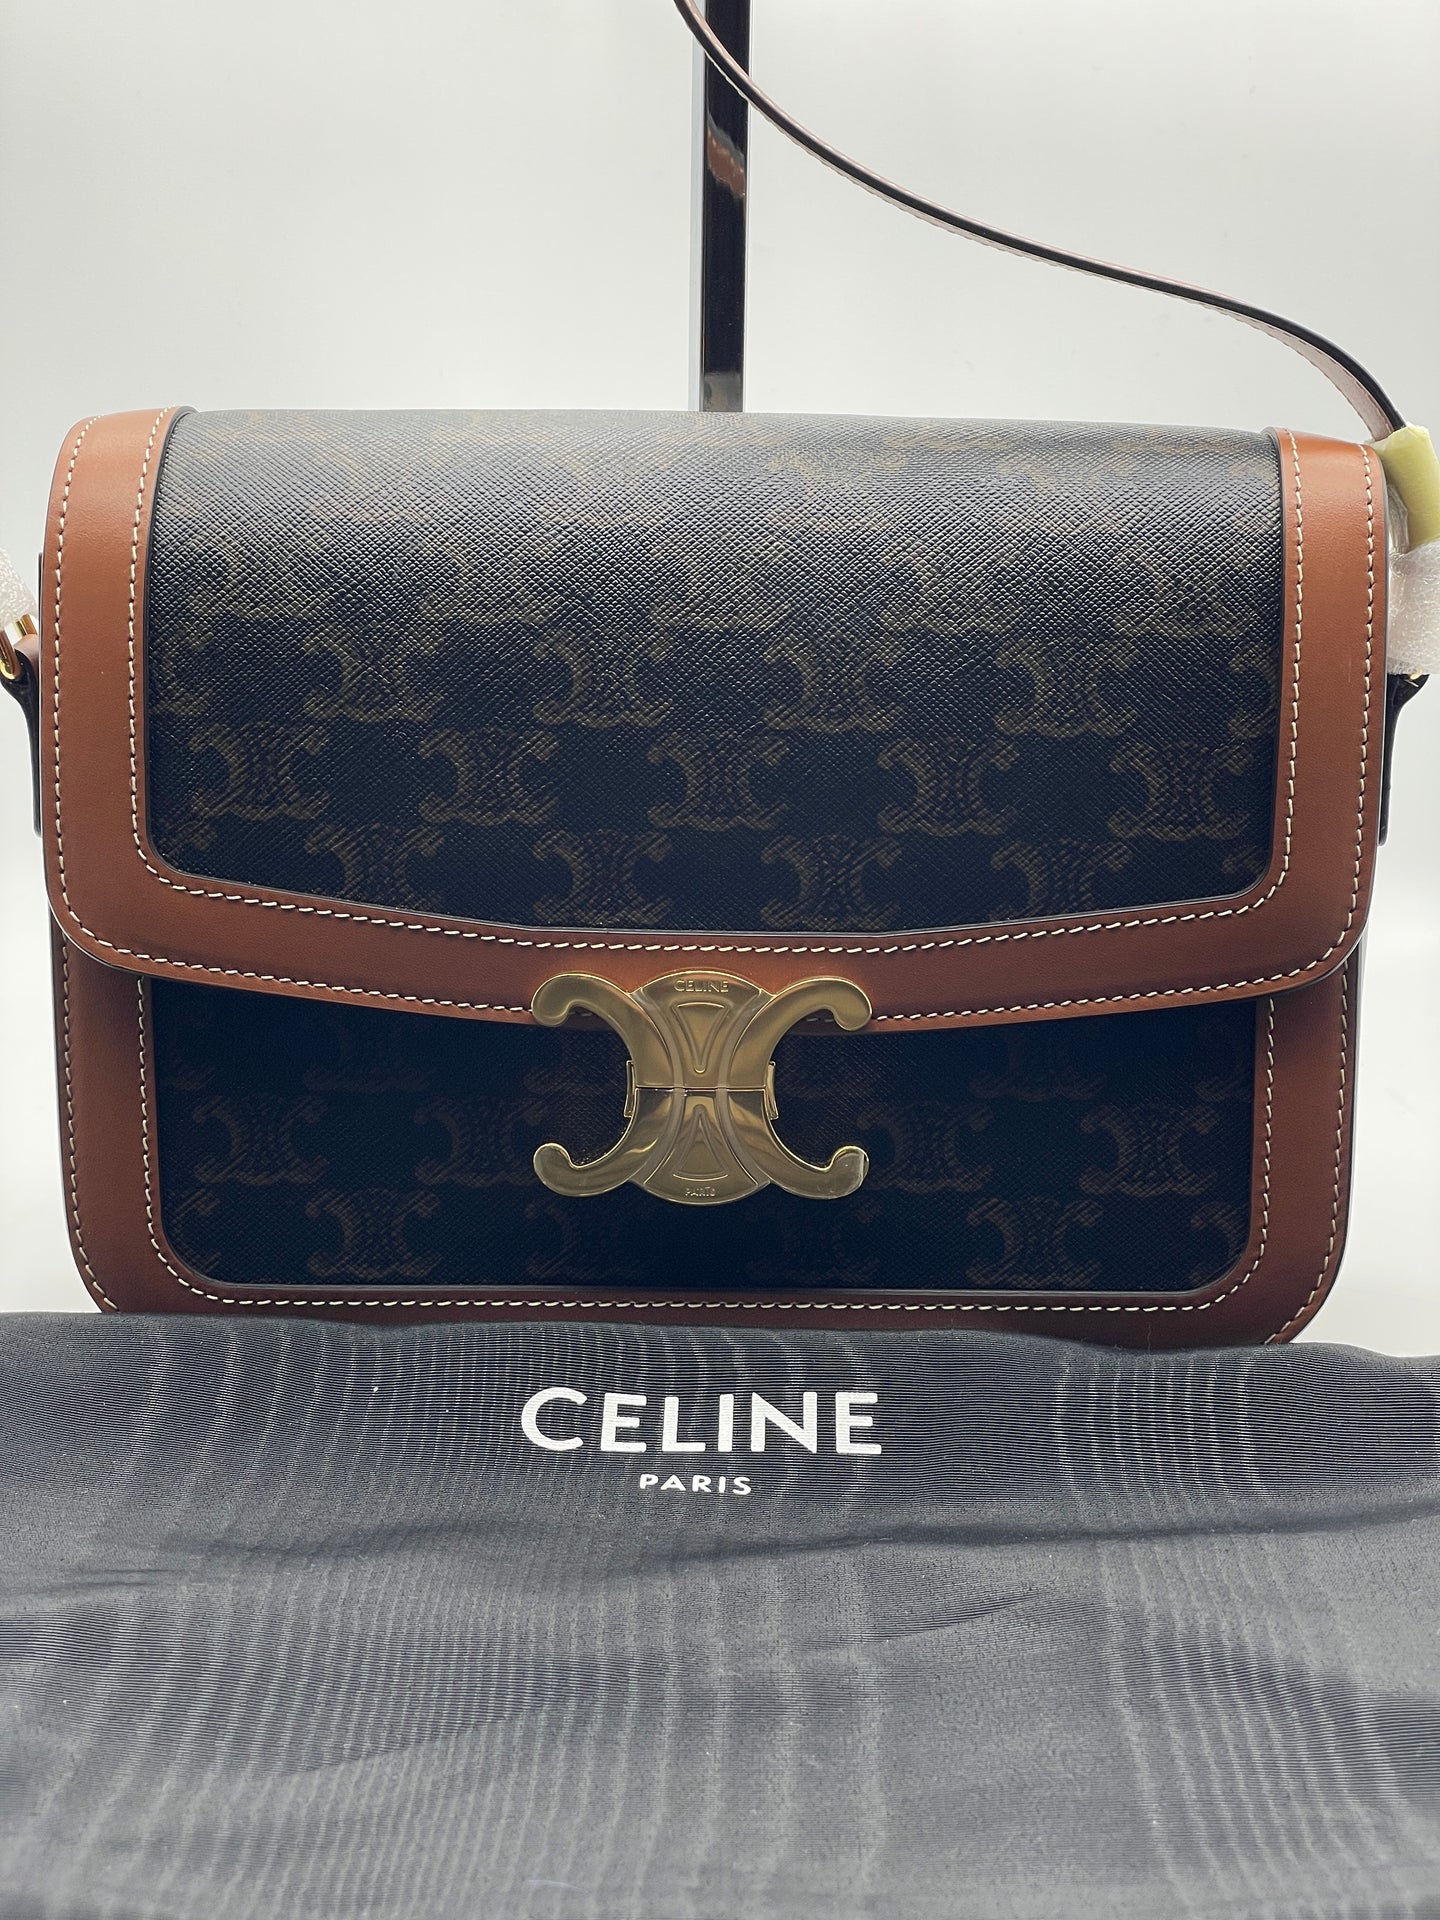 Celine Triomphe Canvas Bag Collection